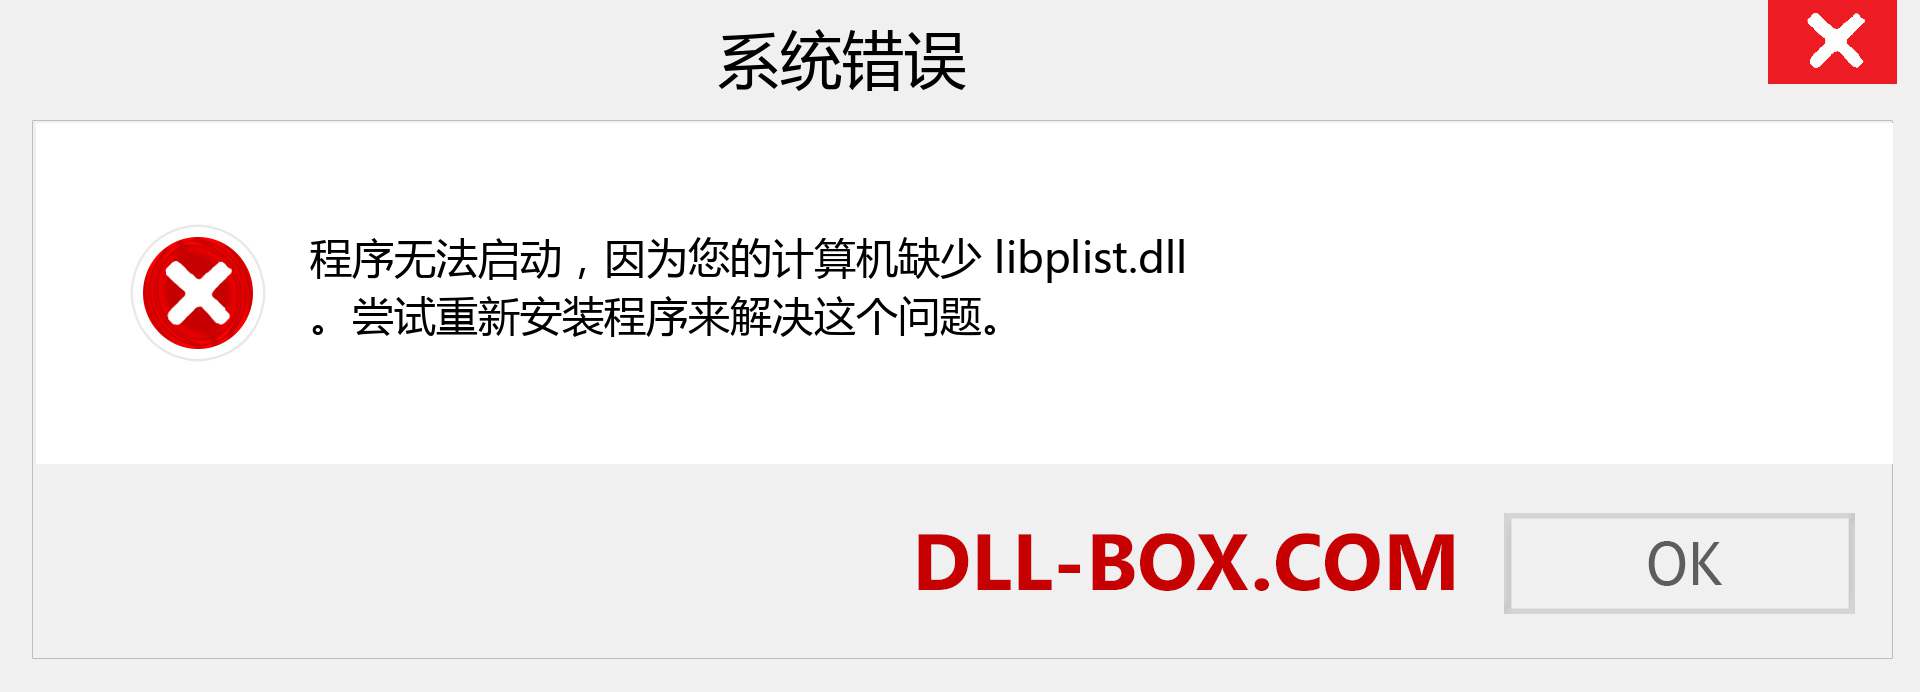 libplist.dll 文件丢失？。 适用于 Windows 7、8、10 的下载 - 修复 Windows、照片、图像上的 libplist dll 丢失错误